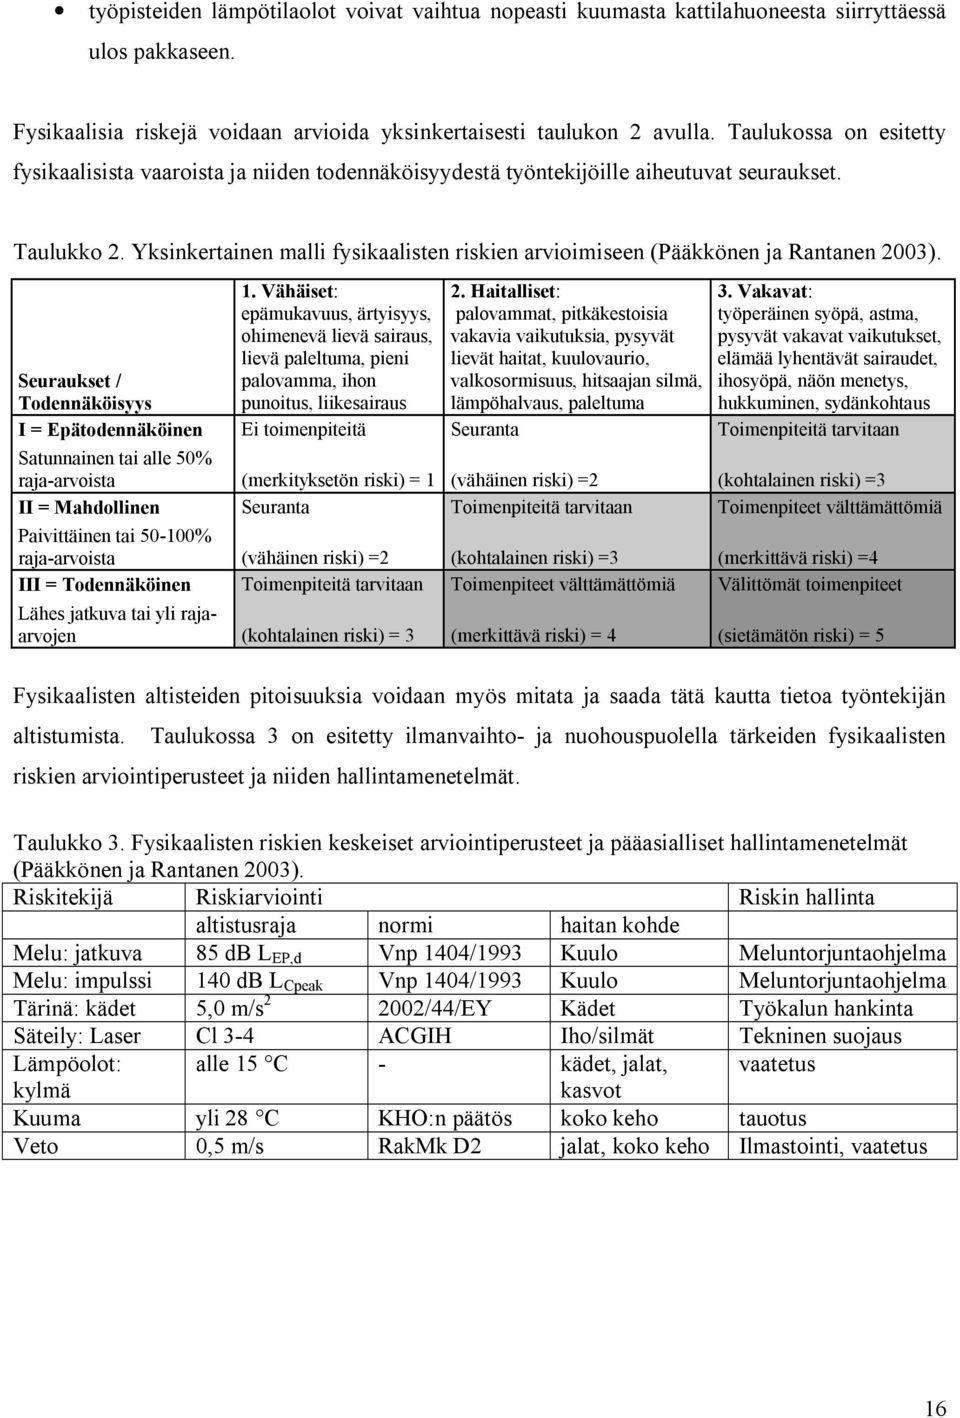 Yksinkertainen malli fysikaalisten riskien arvioimiseen (Pääkkönen ja Rantanen 2003). Seuraukset / Todennäköisyys 1.